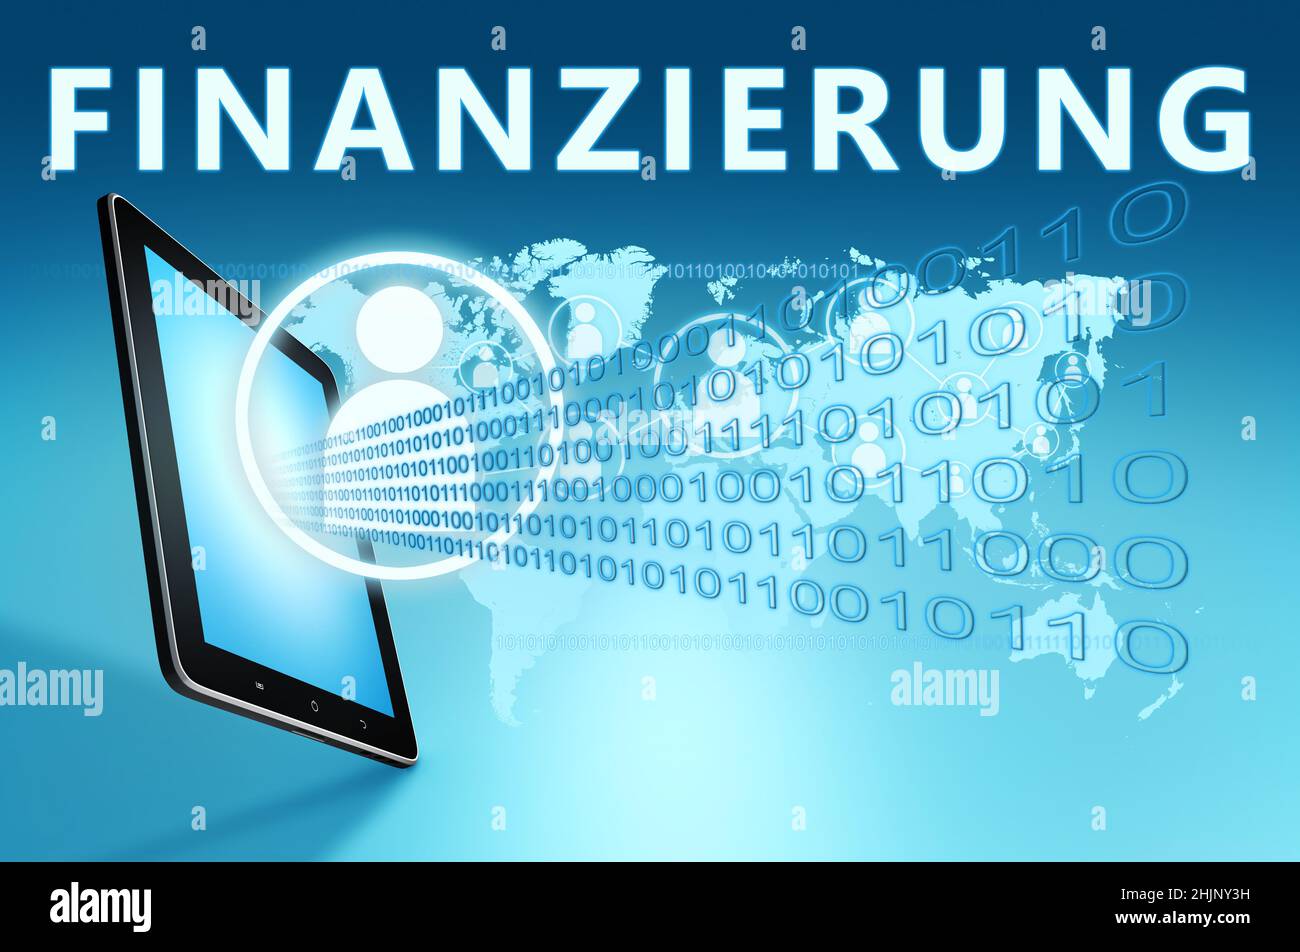 Finanzierung - palabra alemana para la financiación o la financiación - texto con iconos sociales y tablet ordenador sobre el fondo azul del mapa del mundo digital. 3D Render Ilus Foto de stock